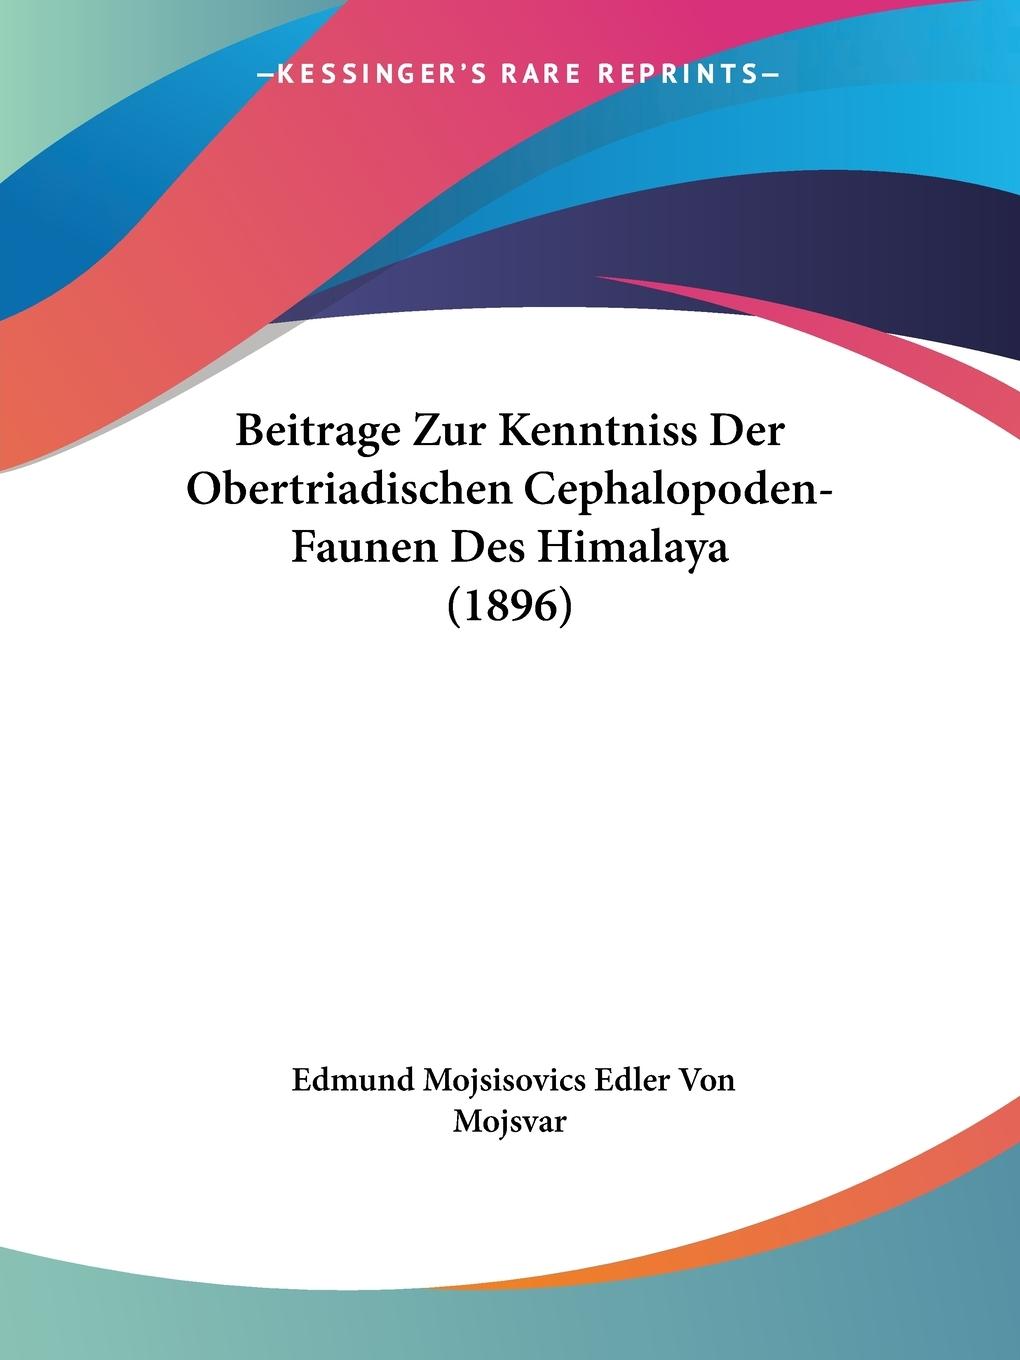 Beitrage Zur Kenntniss Der Obertriadischen Cephalopoden-Faunen Des Himalaya (1896) - Mojsvar, Edmund Mojsisovics Edler von